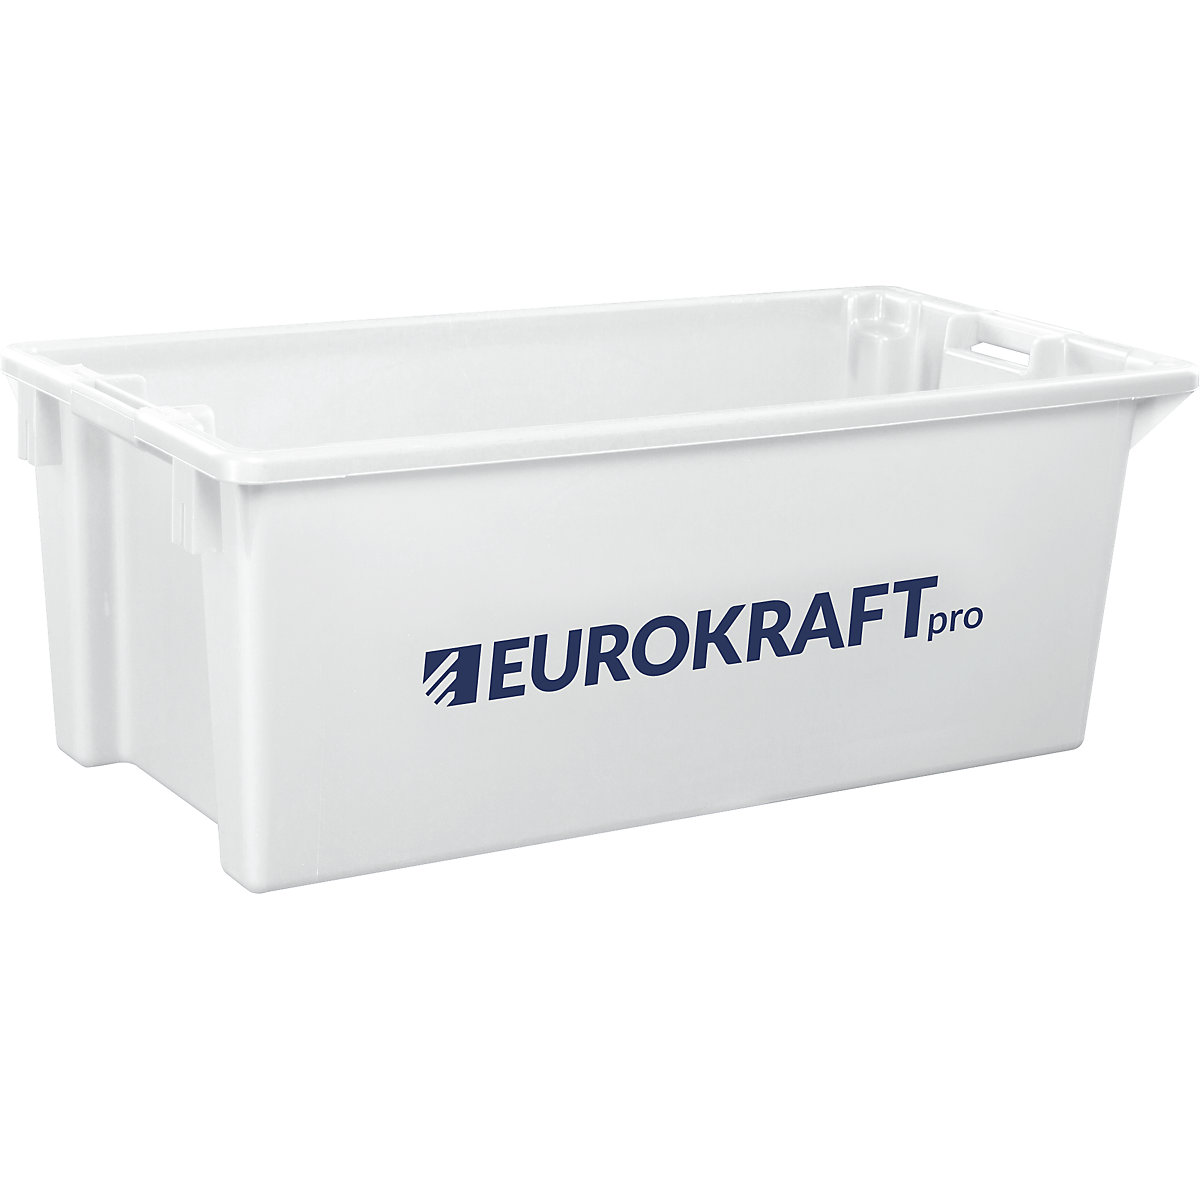 EUROKRAFTpro – Obrotowy pojemnik do ustawiania w stos z polipropylenu dopuszczonego do kontaktu z żywnością, poj. 13 l, opak. 4 szt., ścianki i dno zamknięte, kolor naturalny